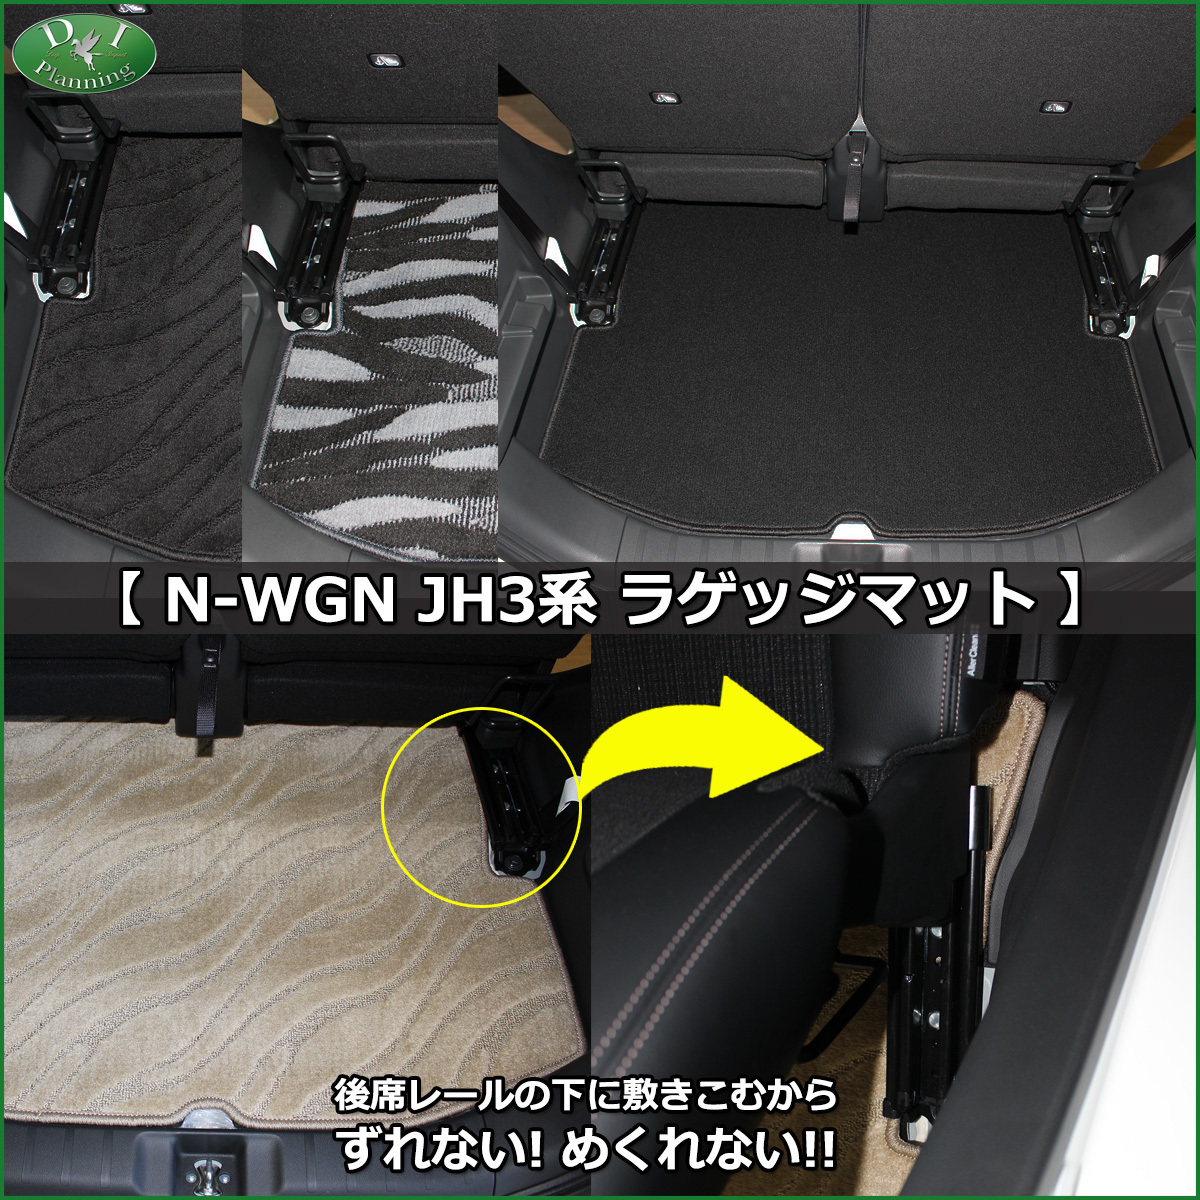  новая модель NWGN N-WGN JH3 JH4 NWGN custom коврик на пол & багаж & ветровик двери текстильный узор S автомобиль коврик 